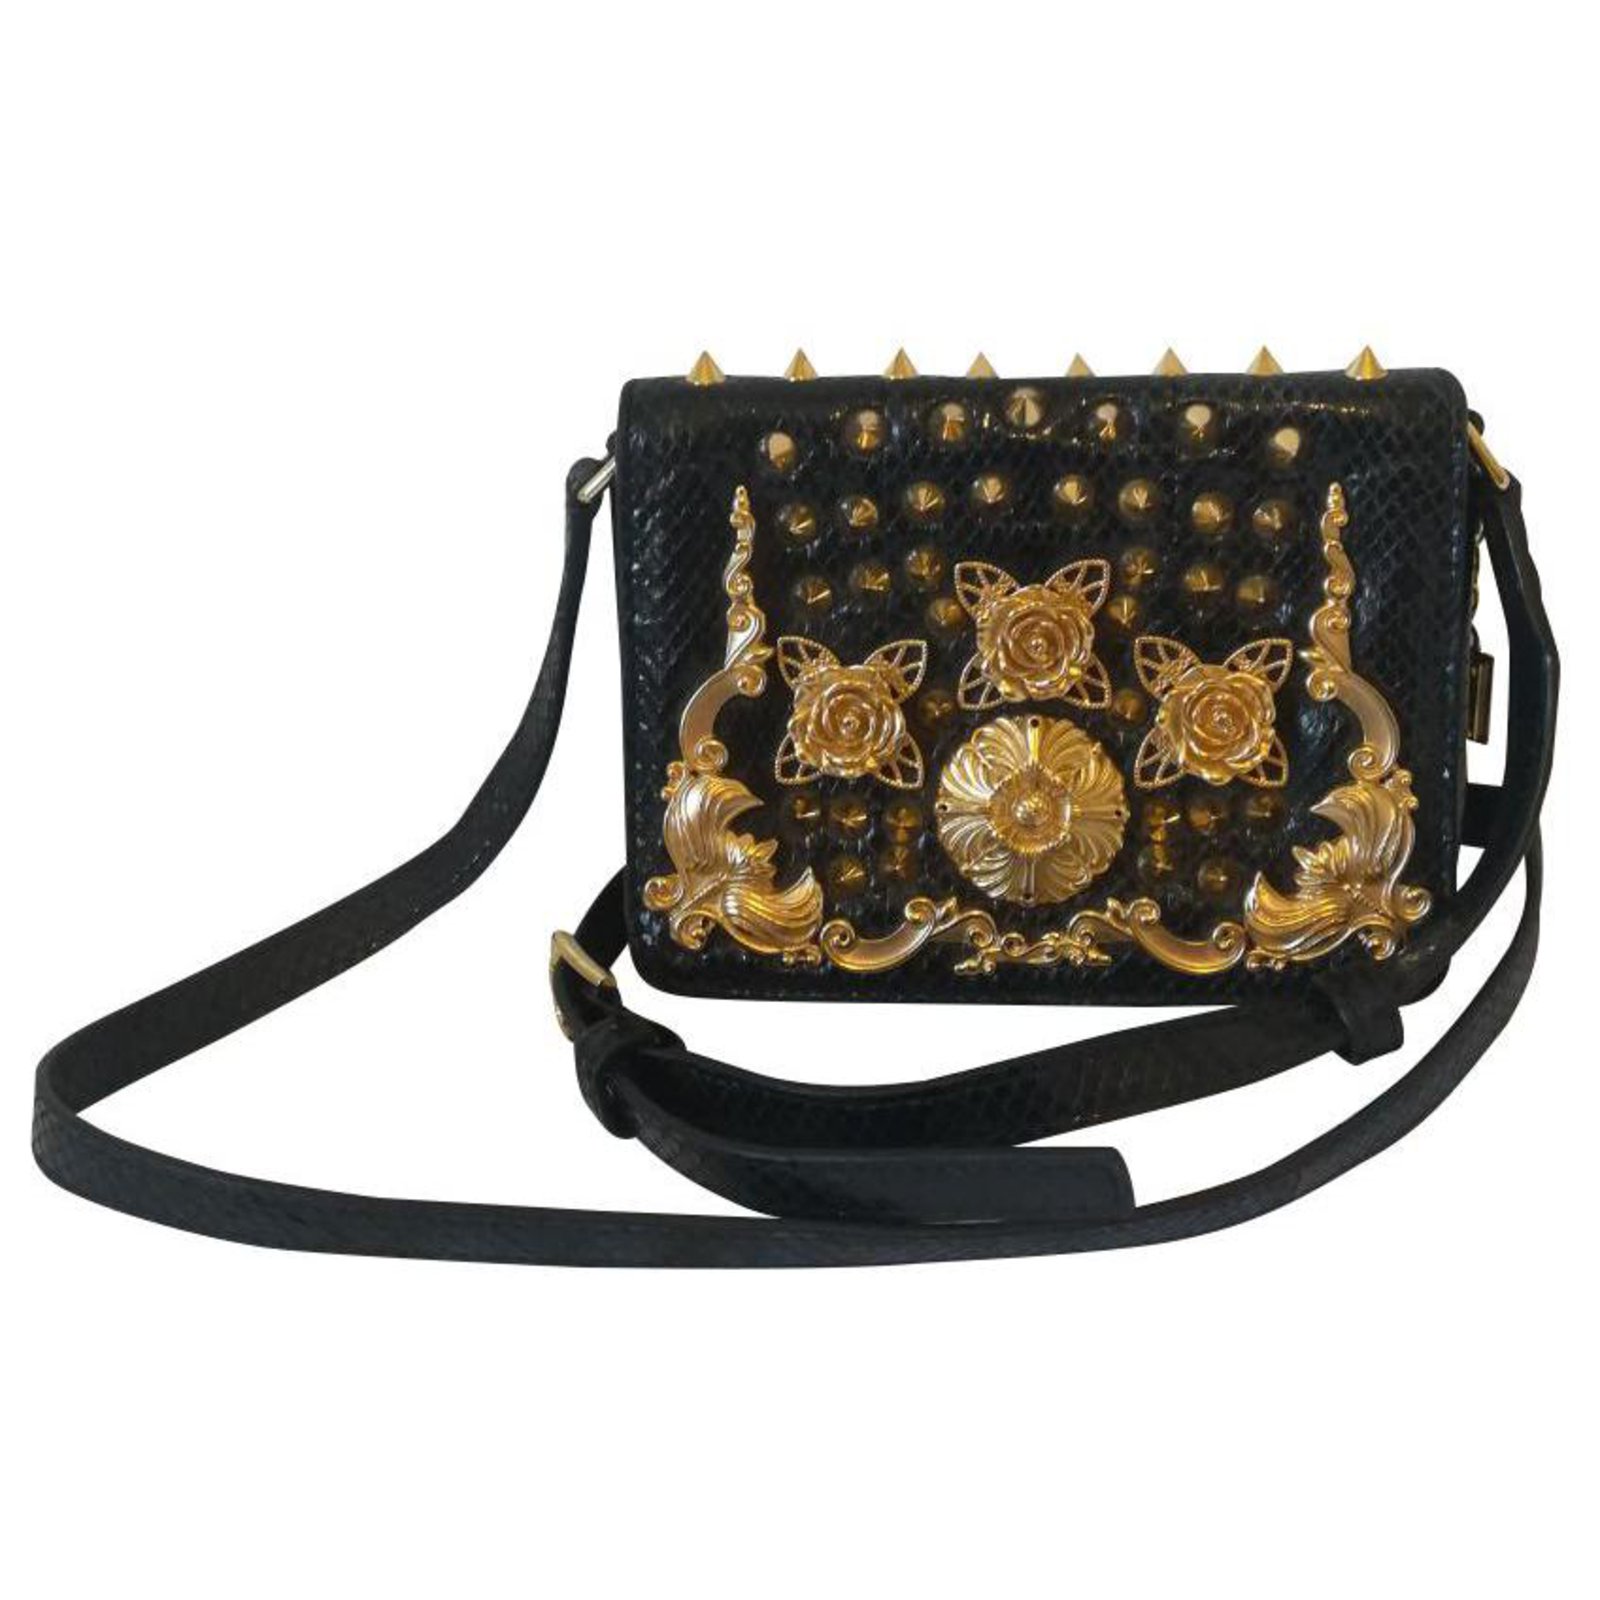 dolce and gabbana gold purse